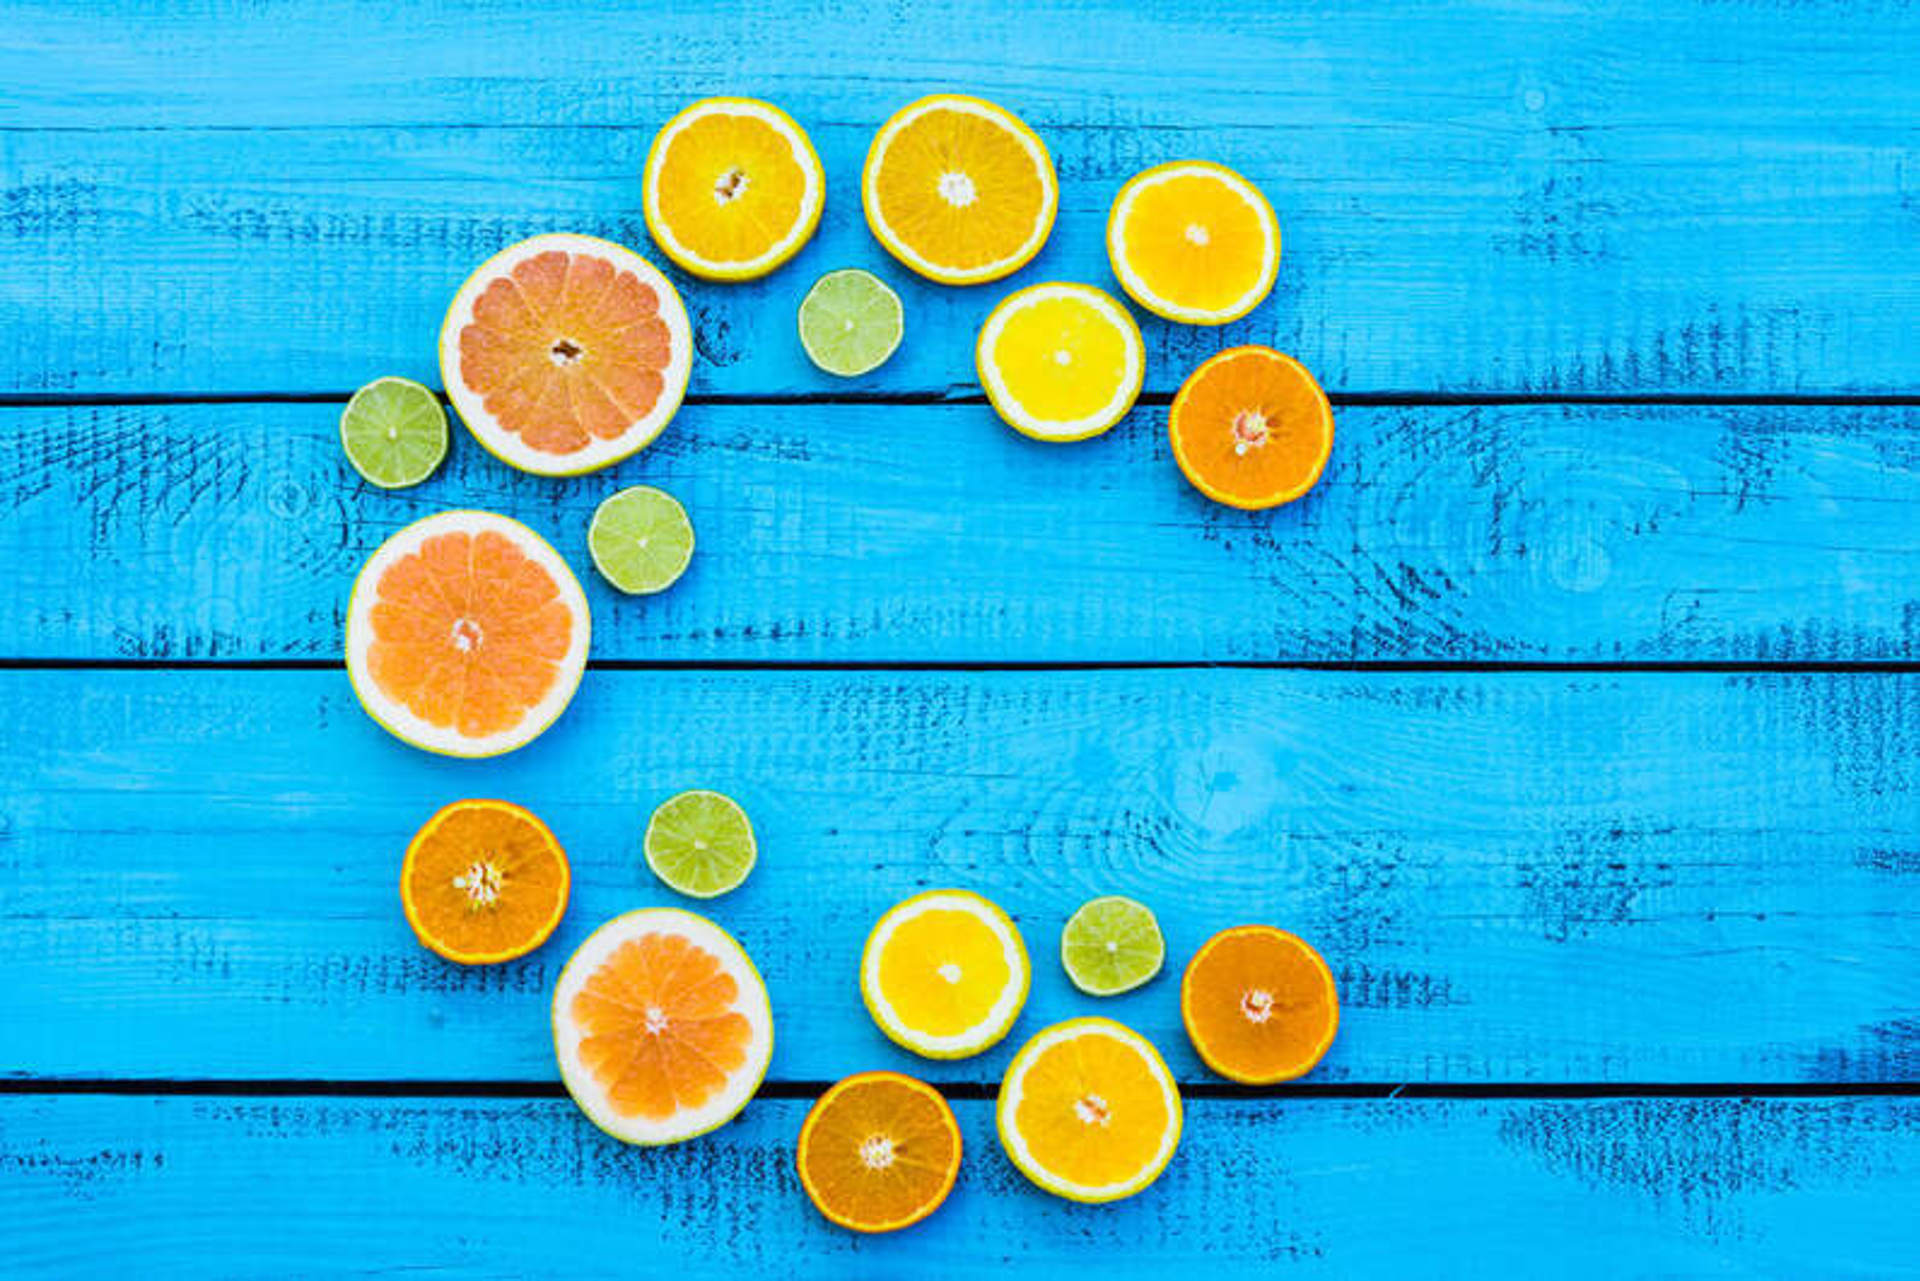 C Vitamini Nelerde Var? Hangi besinlerde C vitamini bulunur?